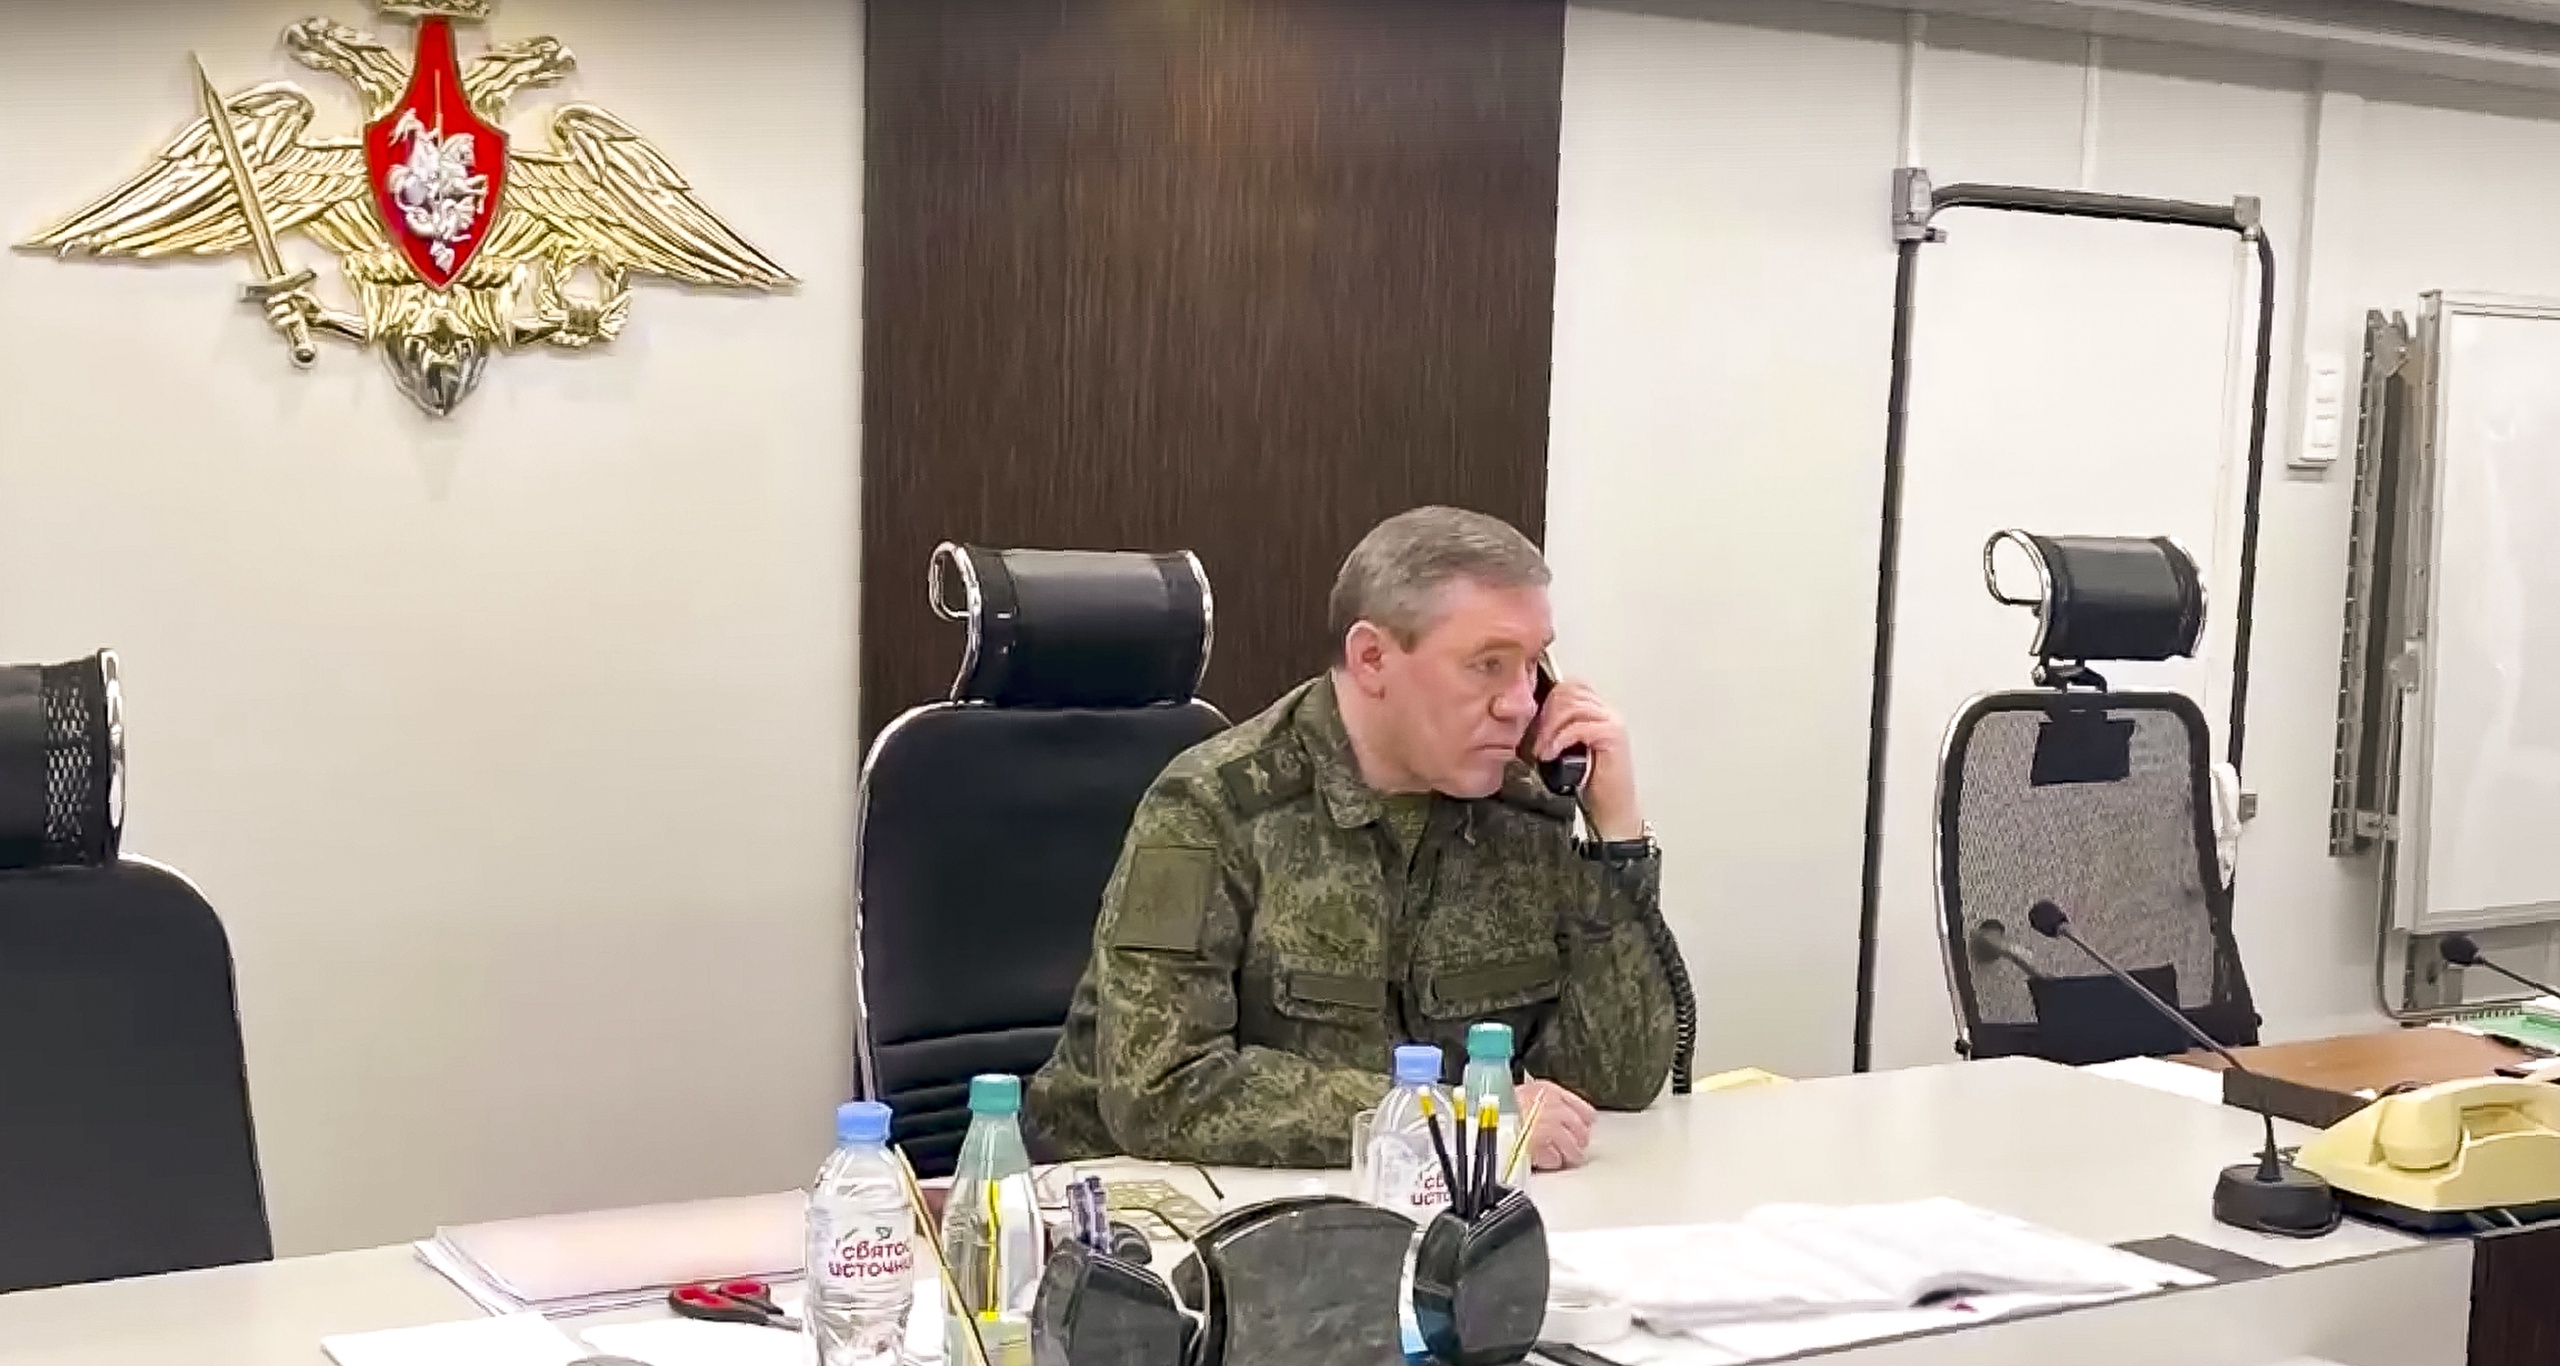 De bevelhebber van de Russische troepen Oekraïne, generaal Valery Gerasimov, wil de dagelijkse discipline in zijn leger verbeteren. Dat meldt het Britse ministerie van Defensie. Met zijn nieuwe oekazes haalt Gerasimov zich niet alleen de hoon van zijn ondergeschikten op de hals, maar ook die van Wagner-baas Prigozjin. 